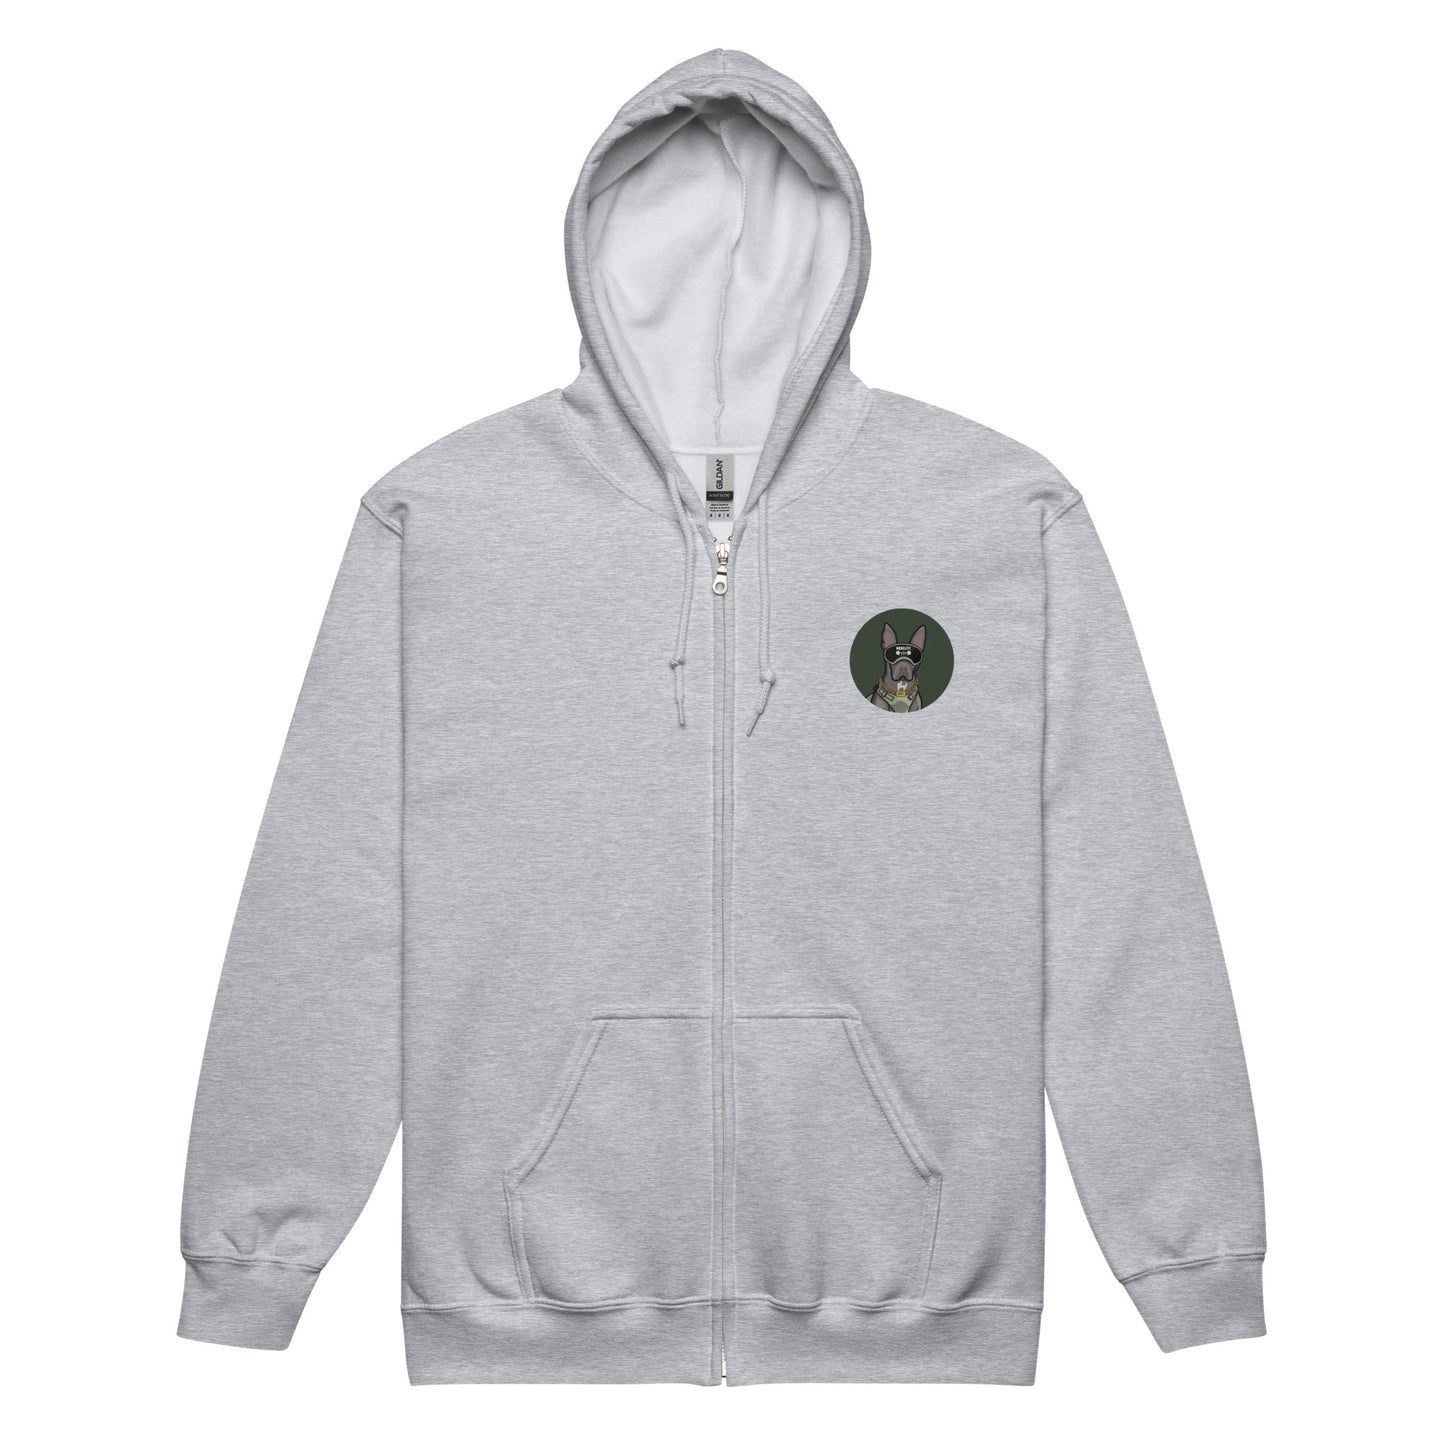 The ABBY Mullet Unisex heavy blend zip hoodie